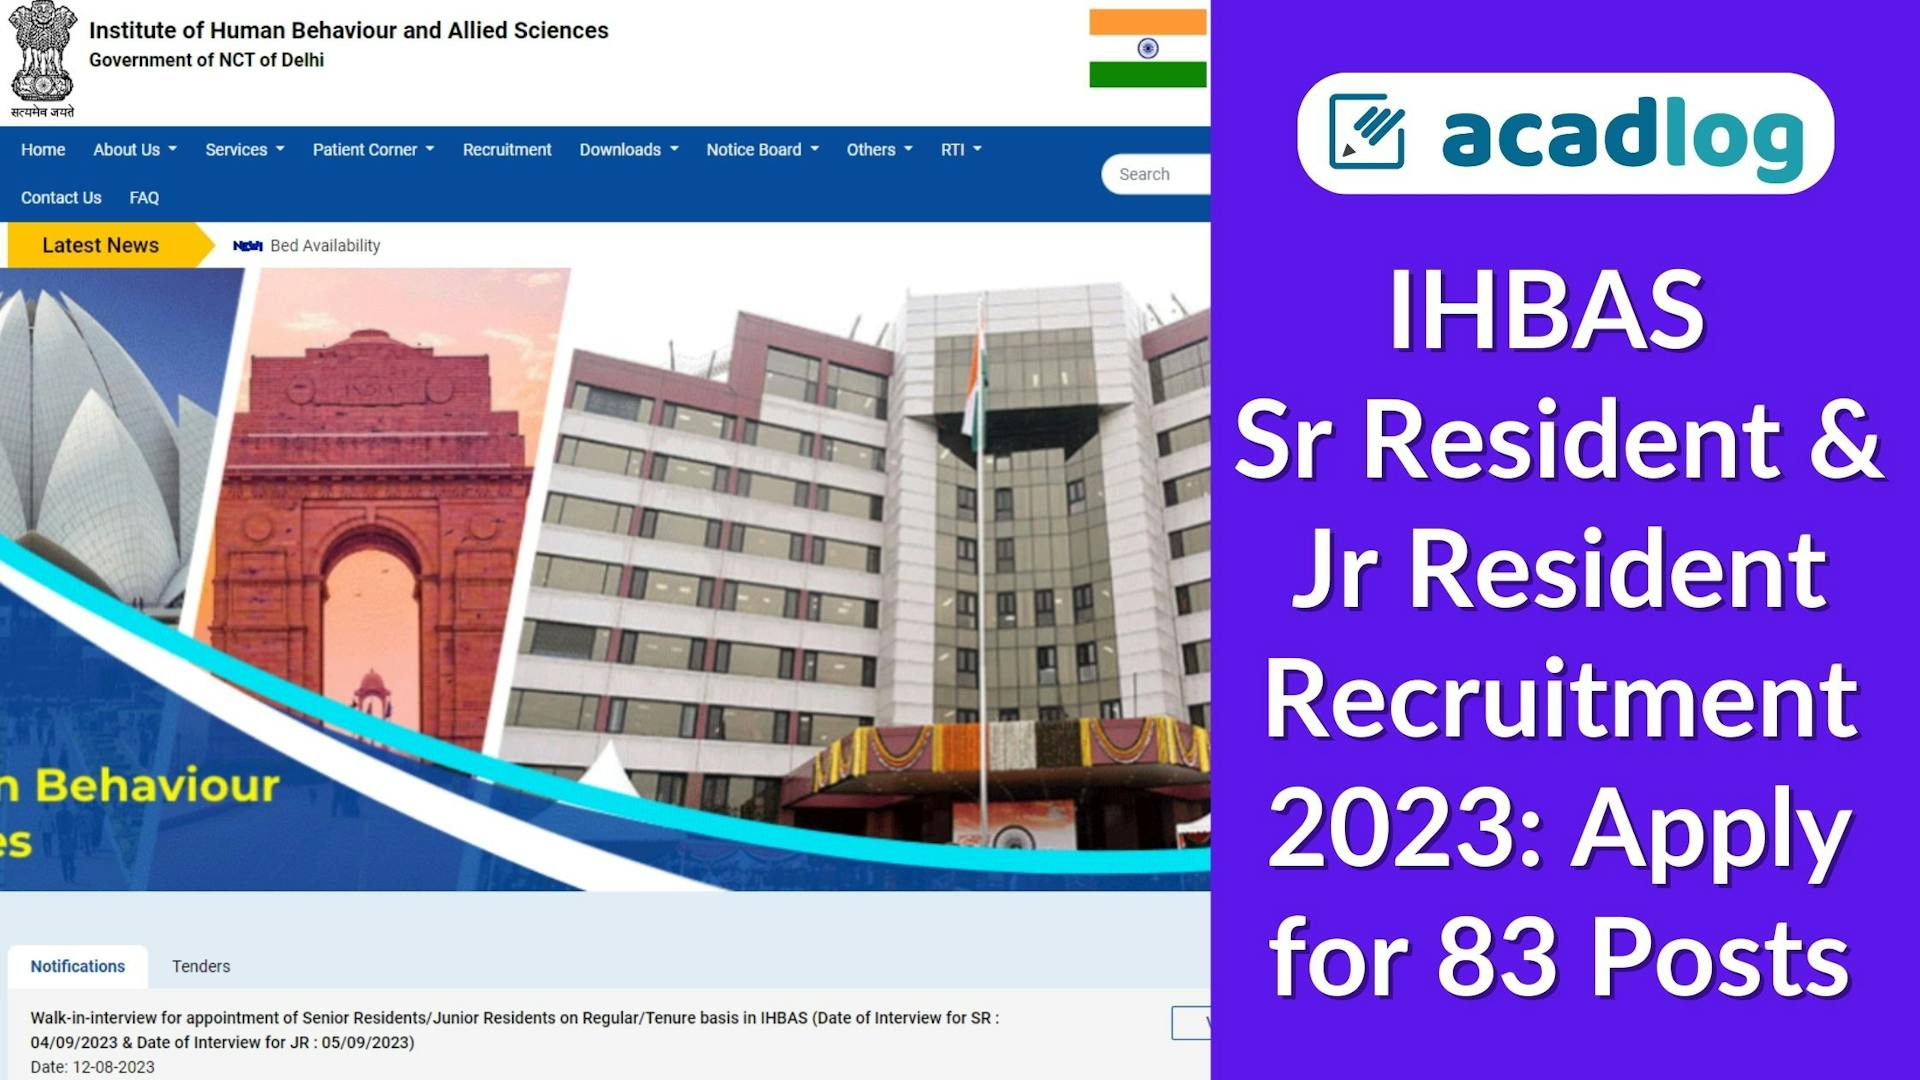 Medical Jobs in Delhi: Recruitment for IHBAS Sr & Jr Resident 2023 - 83 Posts